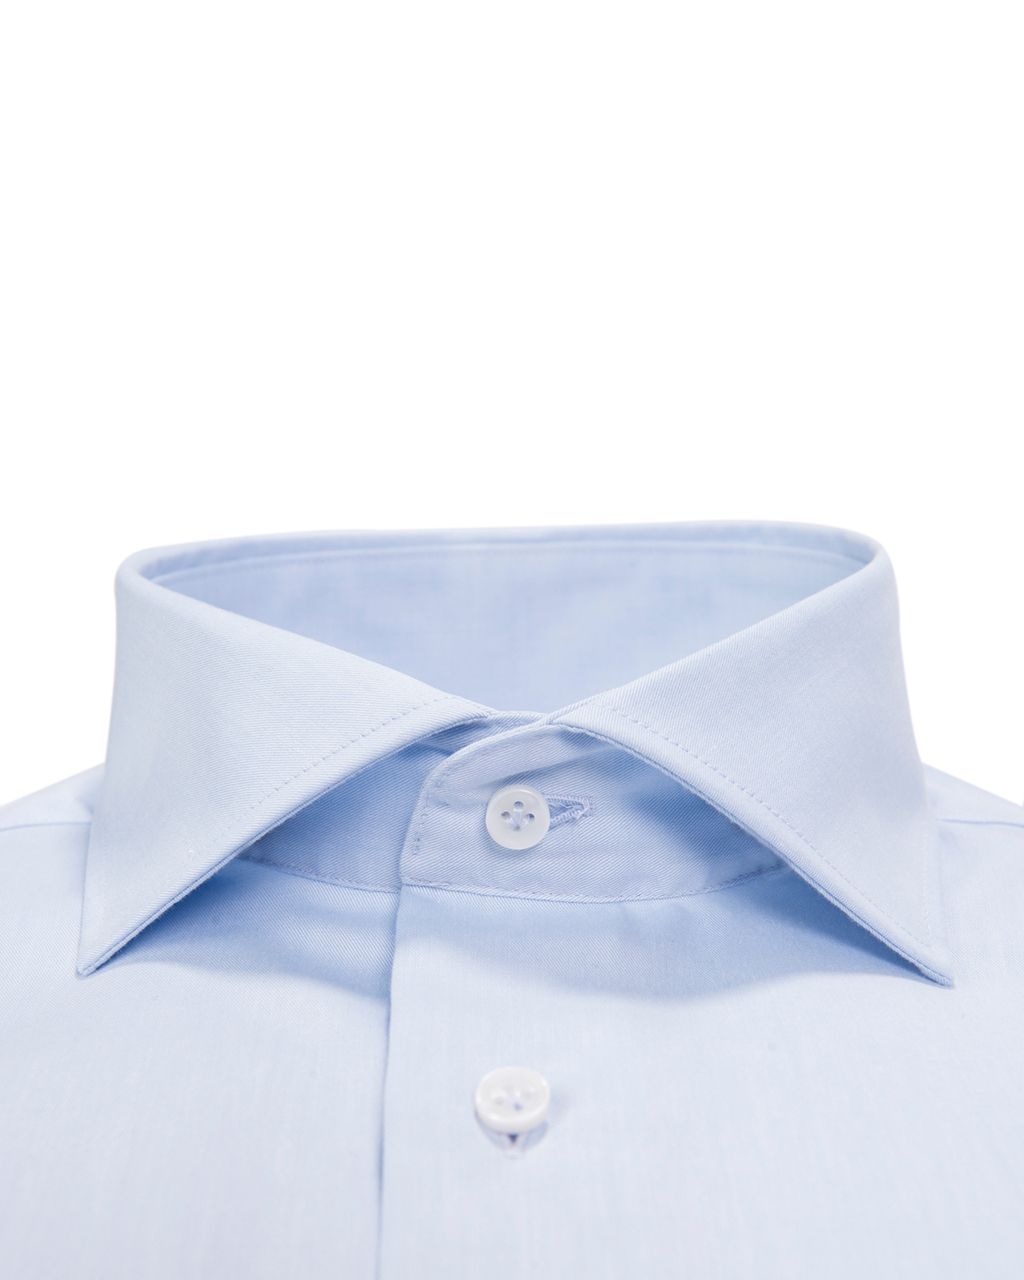 Profuomo Originale Slim fit Overhemd LM Blauw 002303-32-37